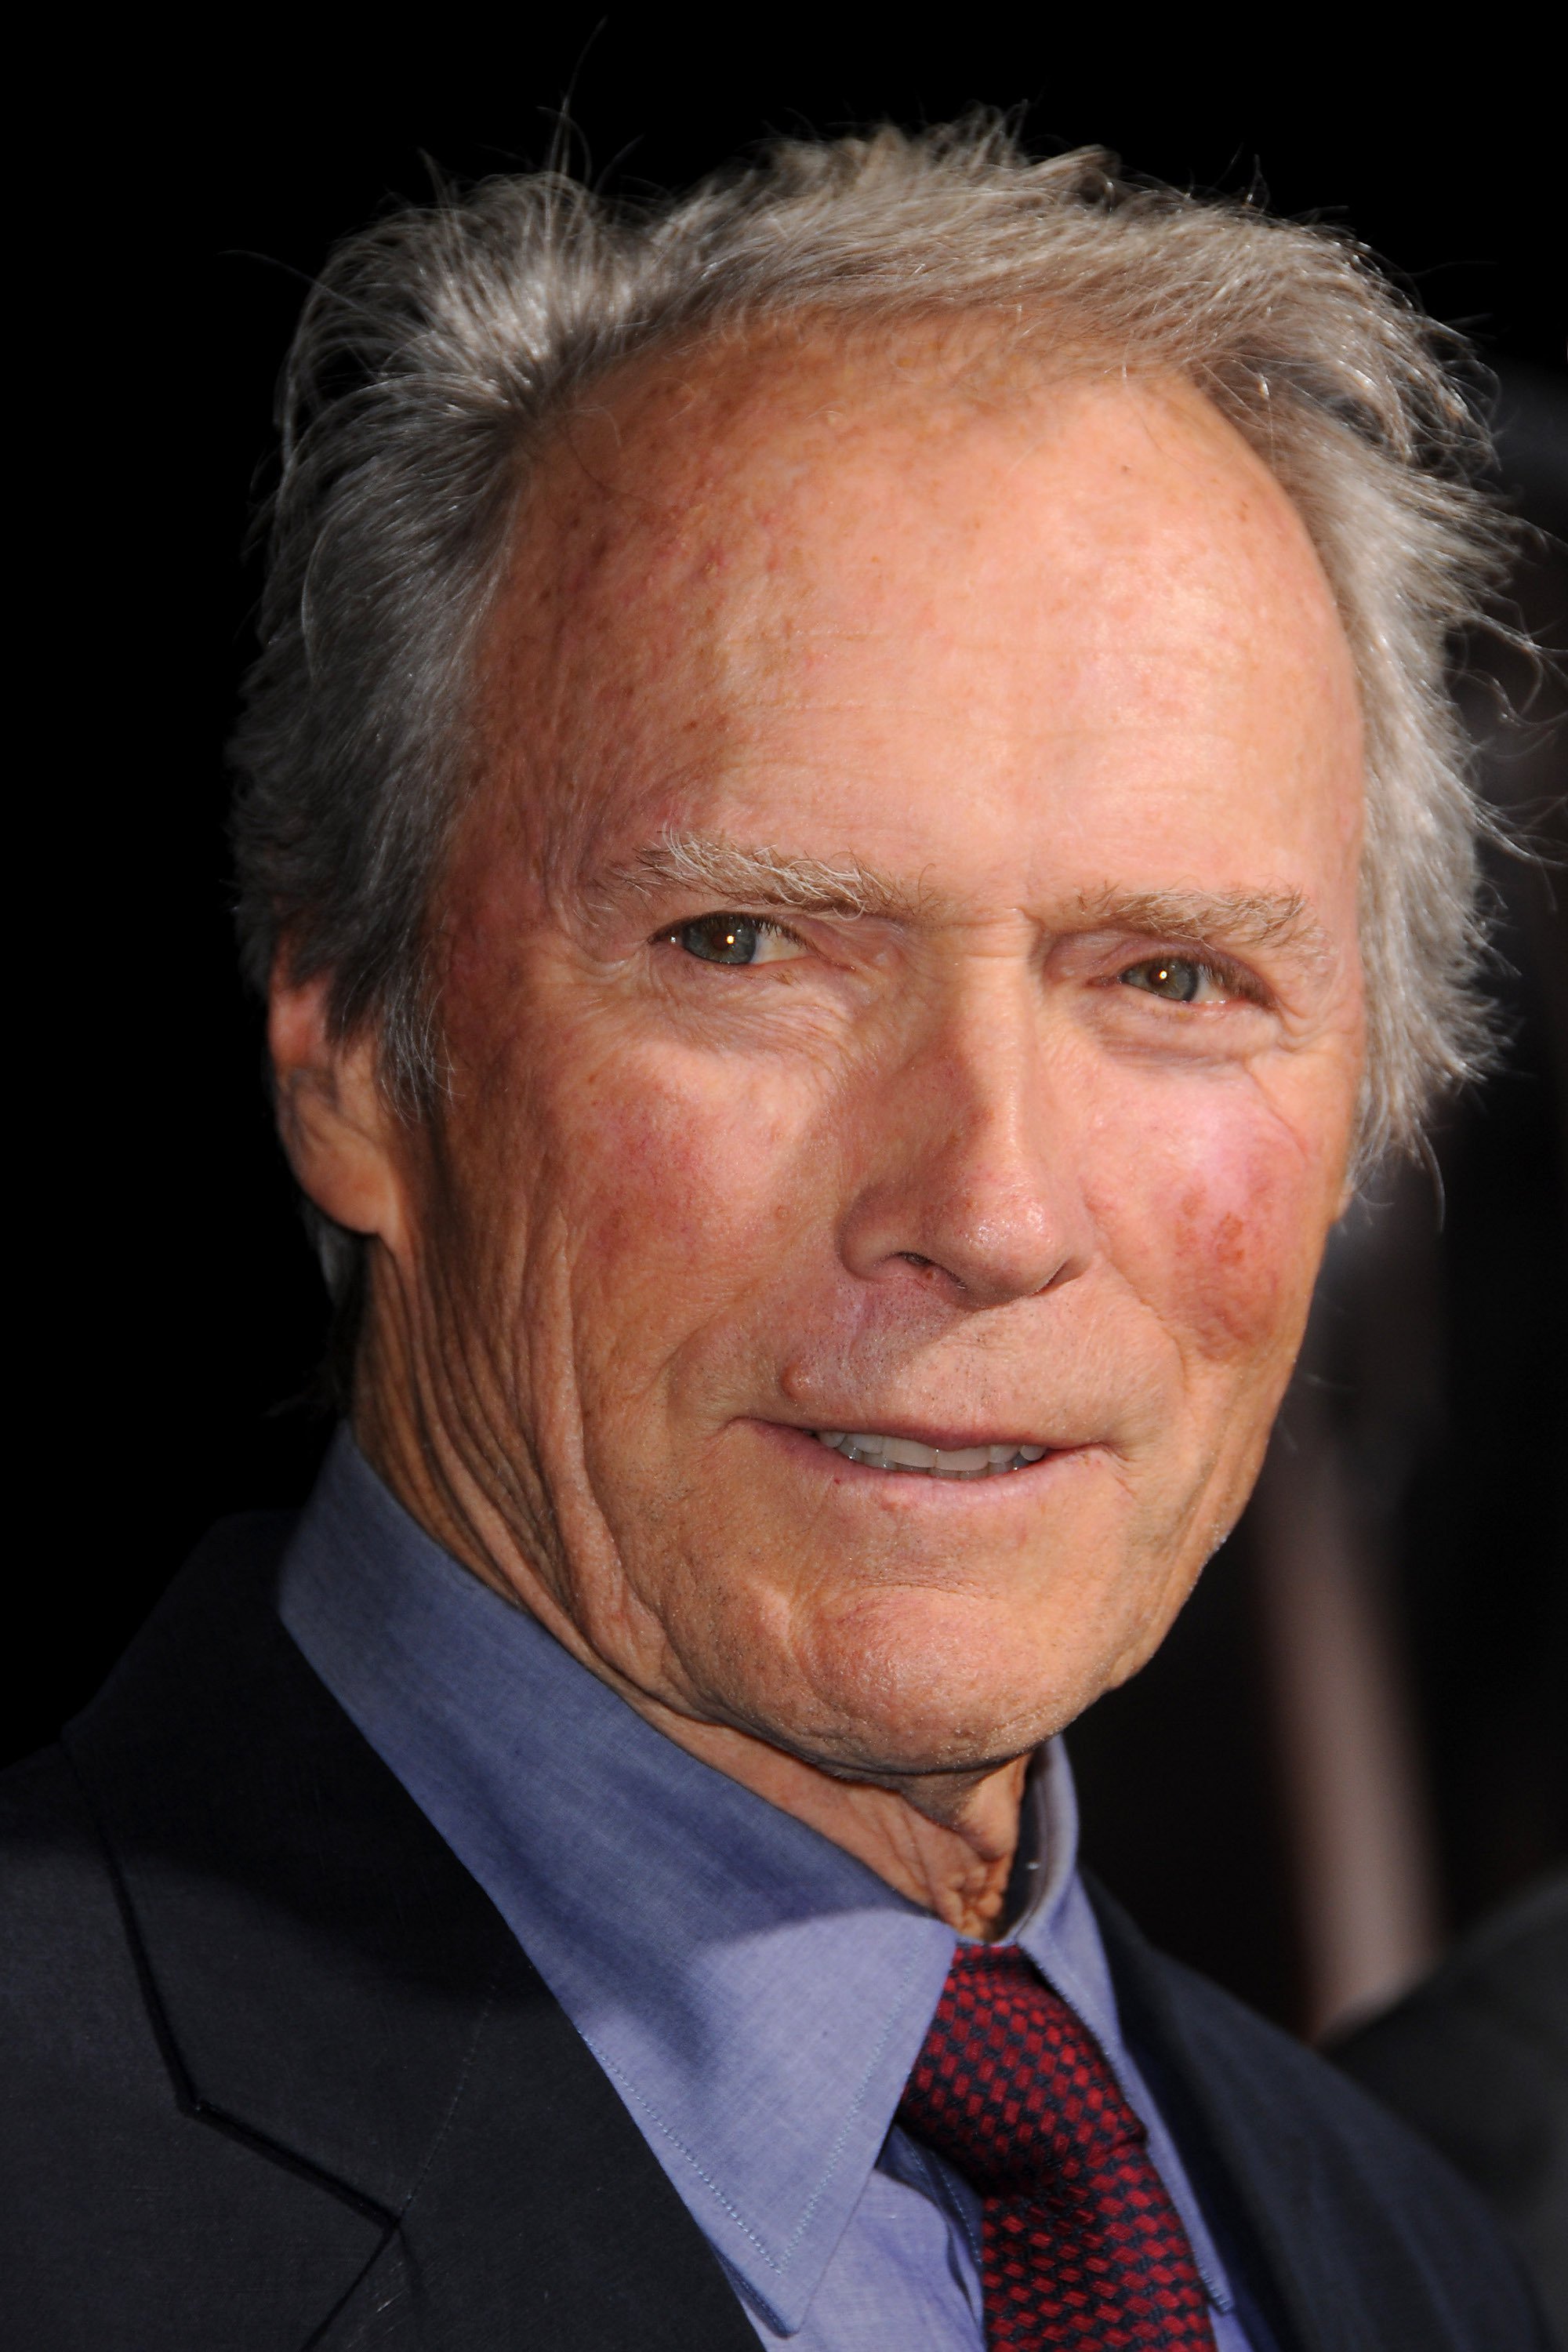 Клинт Иствуд (Clint Eastwood) - Фильмы и сериалы